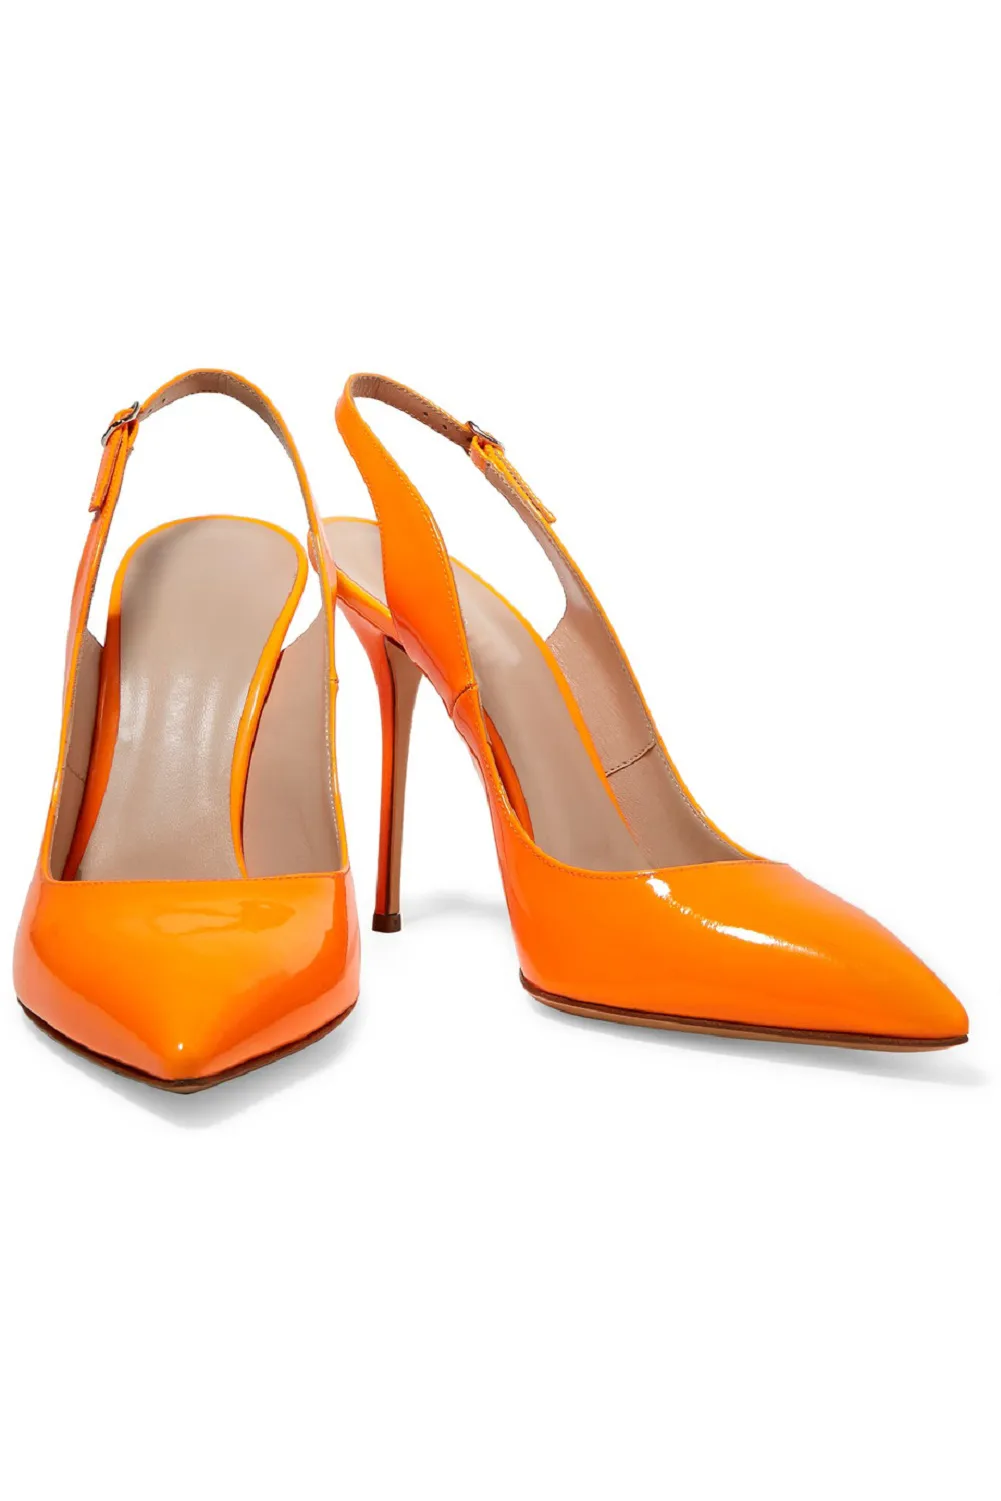 Zandina nouveauté femmes à la main en cuir verni chaussures Slingback pointu haut talon mode fête bal pompes Orange